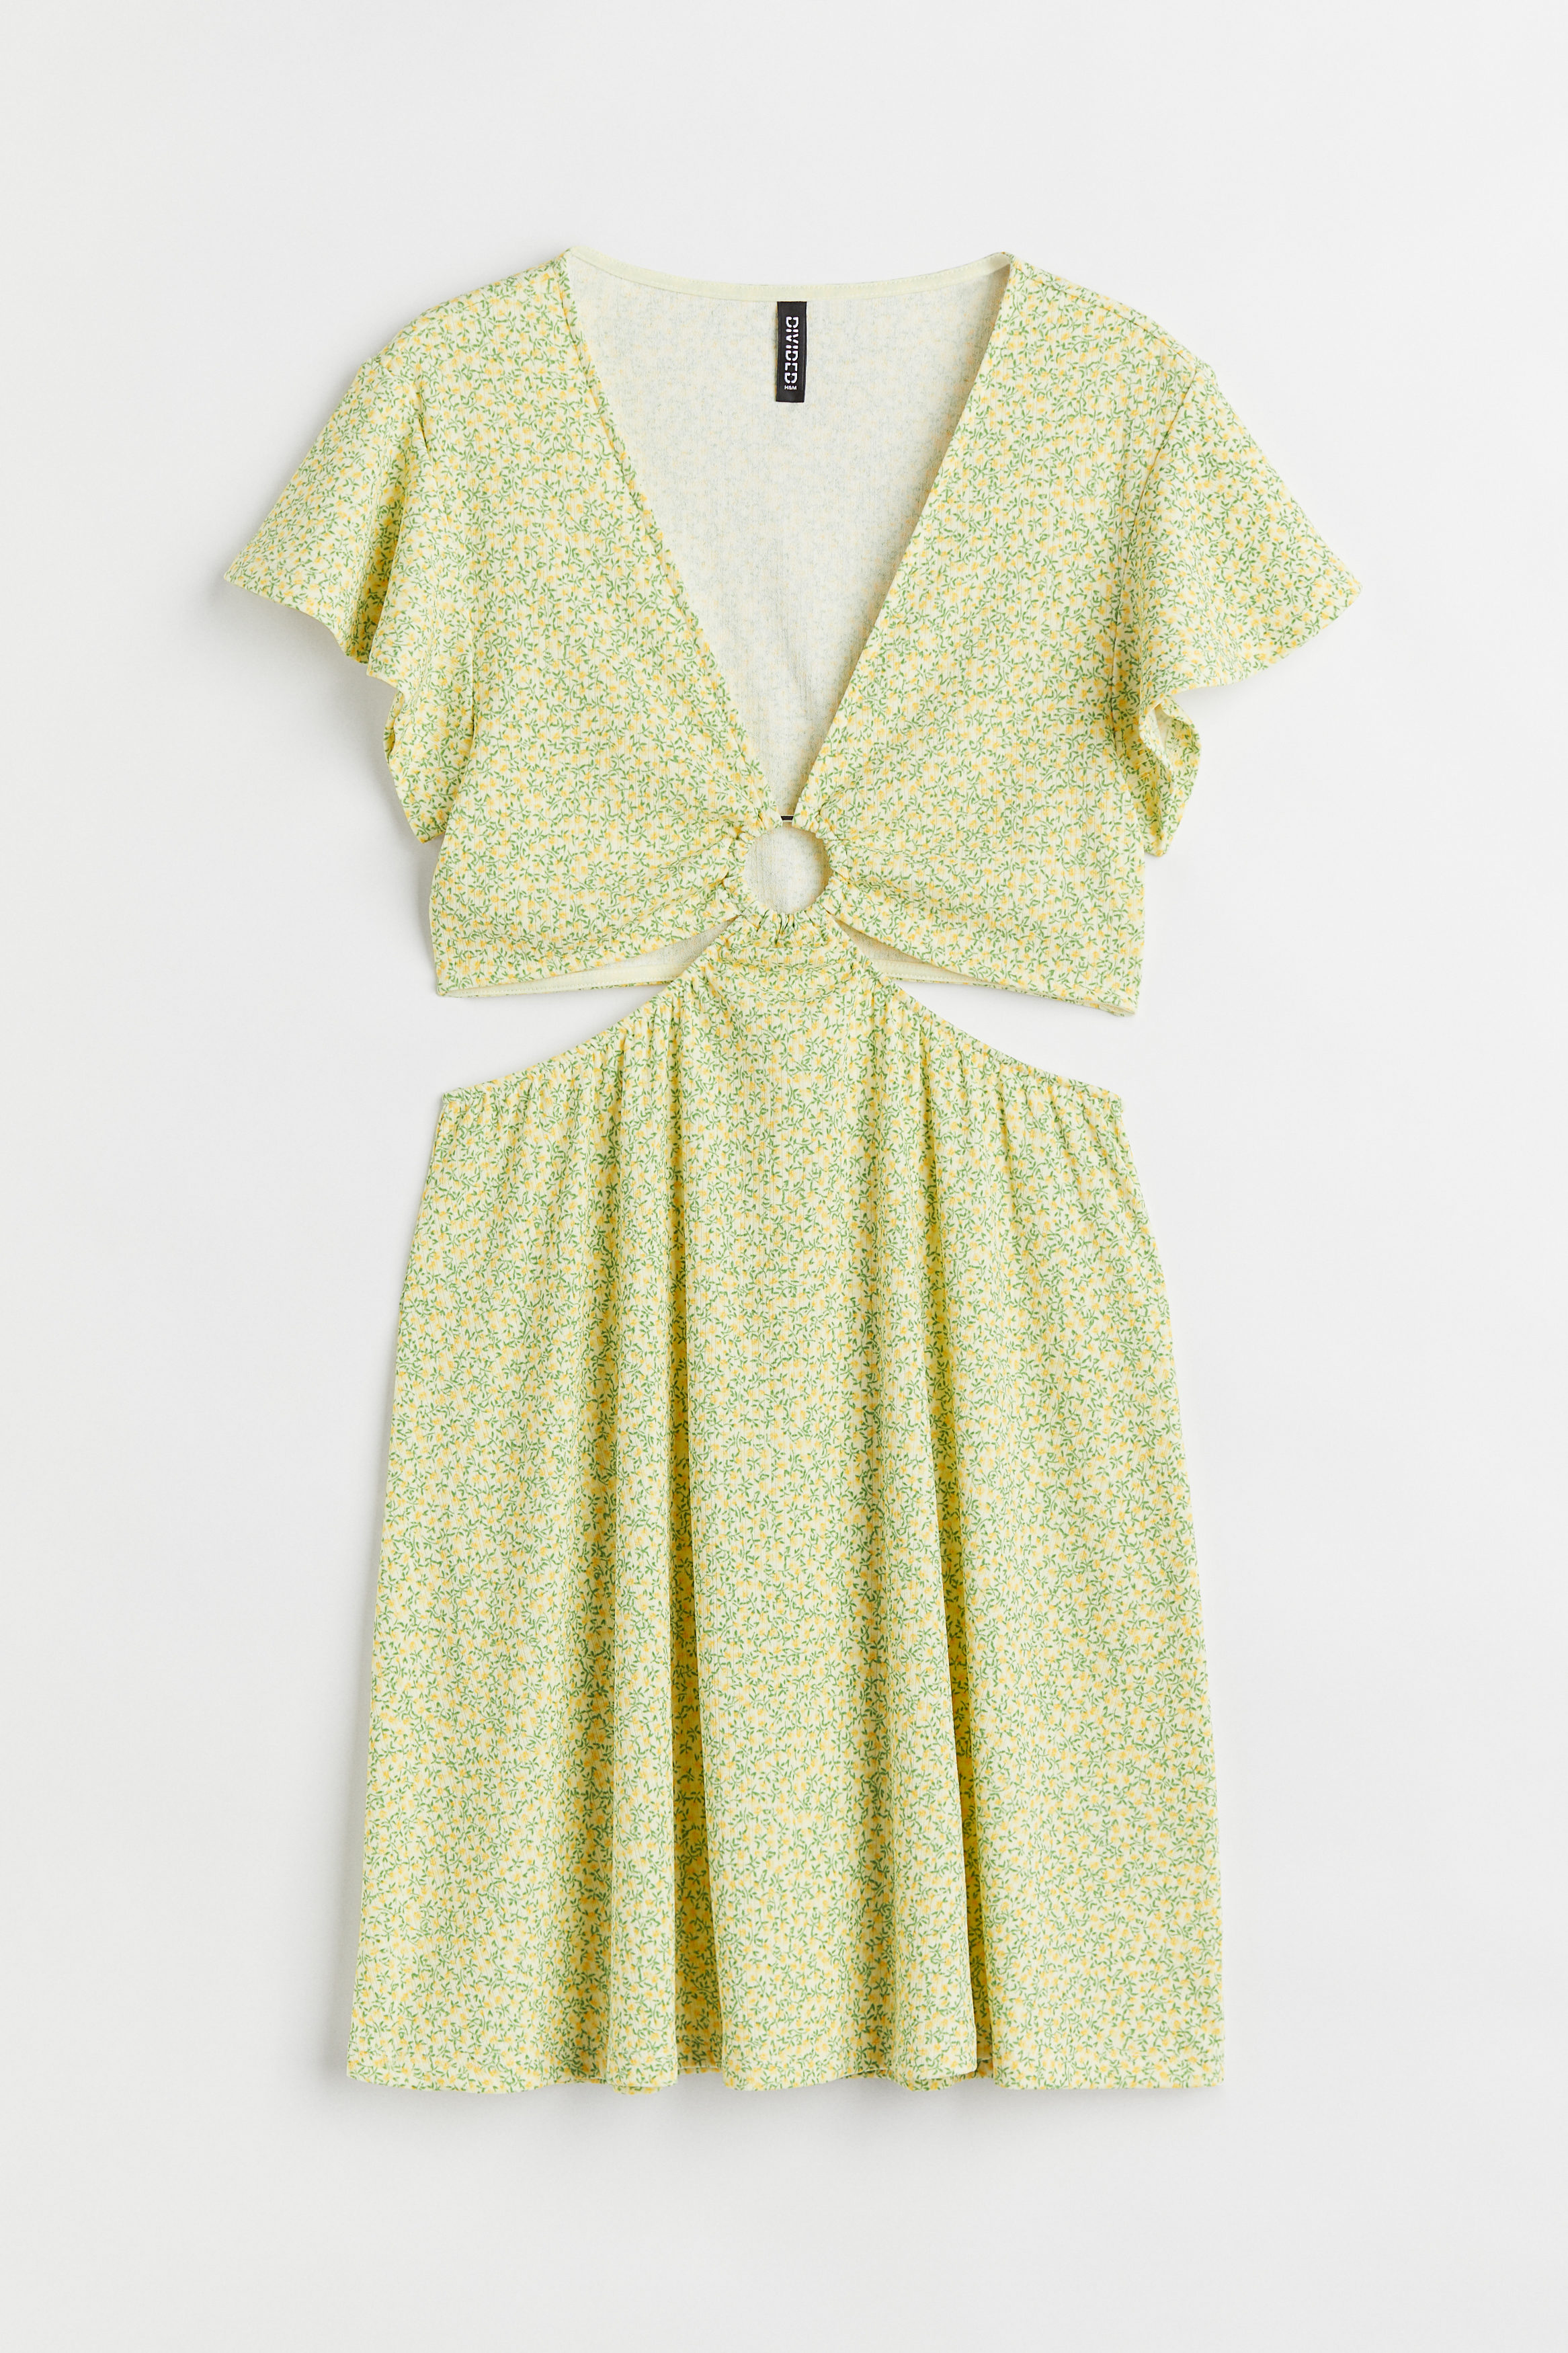 Billede af H&M Cut Out-kjole I Jersey Gul/småblomstret, Hverdagskjoler. Farve: Yellow/small flowers størrelse L